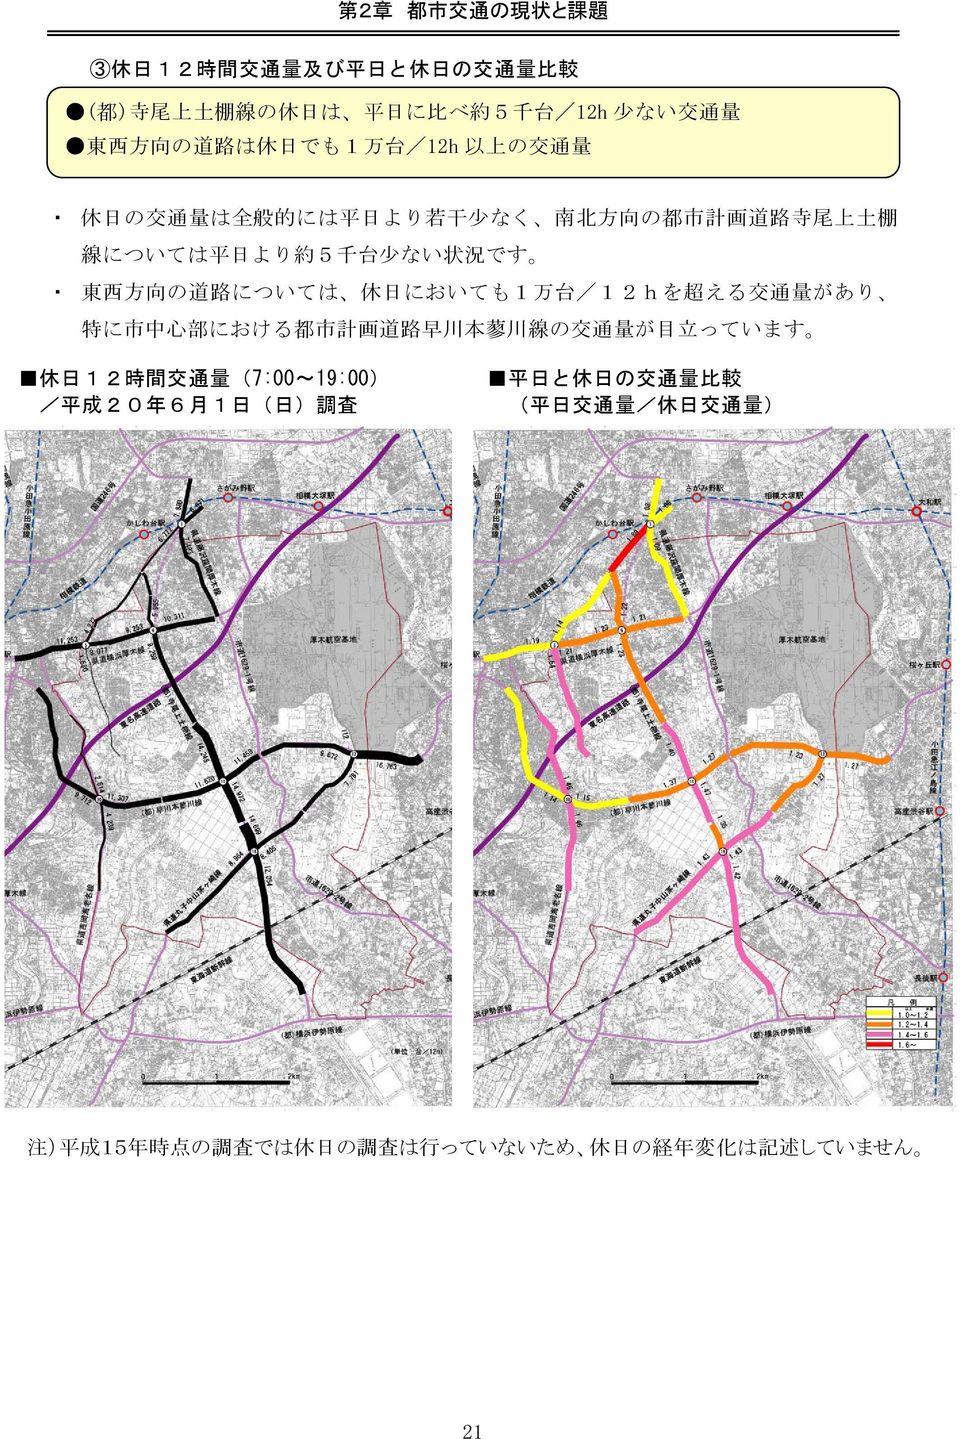 においても1 万 台 /12hを 超 える 交 通 量 があり 特 に 市 中 心 部 における 都 市 計 画 道 路 早 川 本 蓼 川 線 の 交 通 量 が 目 立 っています 休 日 12 時 間 交 通 量 (7:00~19:00) / 平 成 20 年 6 月 1